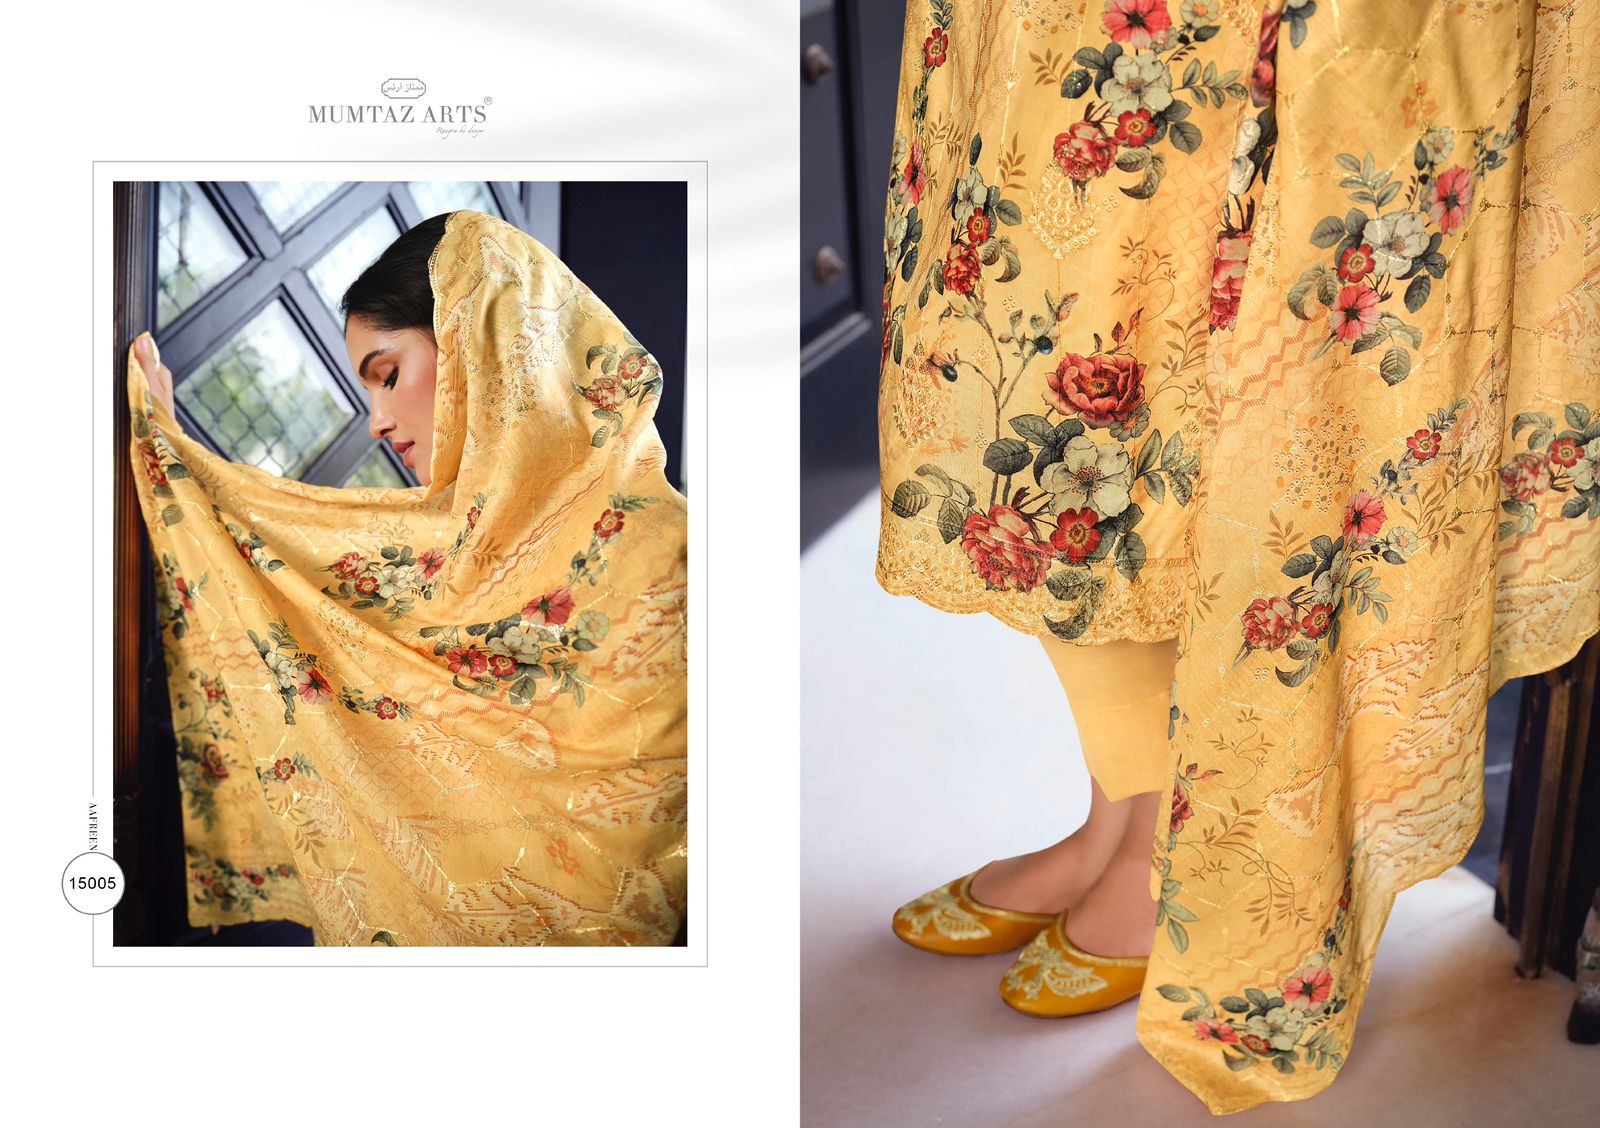 Buy Jaam Sartin Embroidery Aafreen Mumtaz Arts Pant Style Su